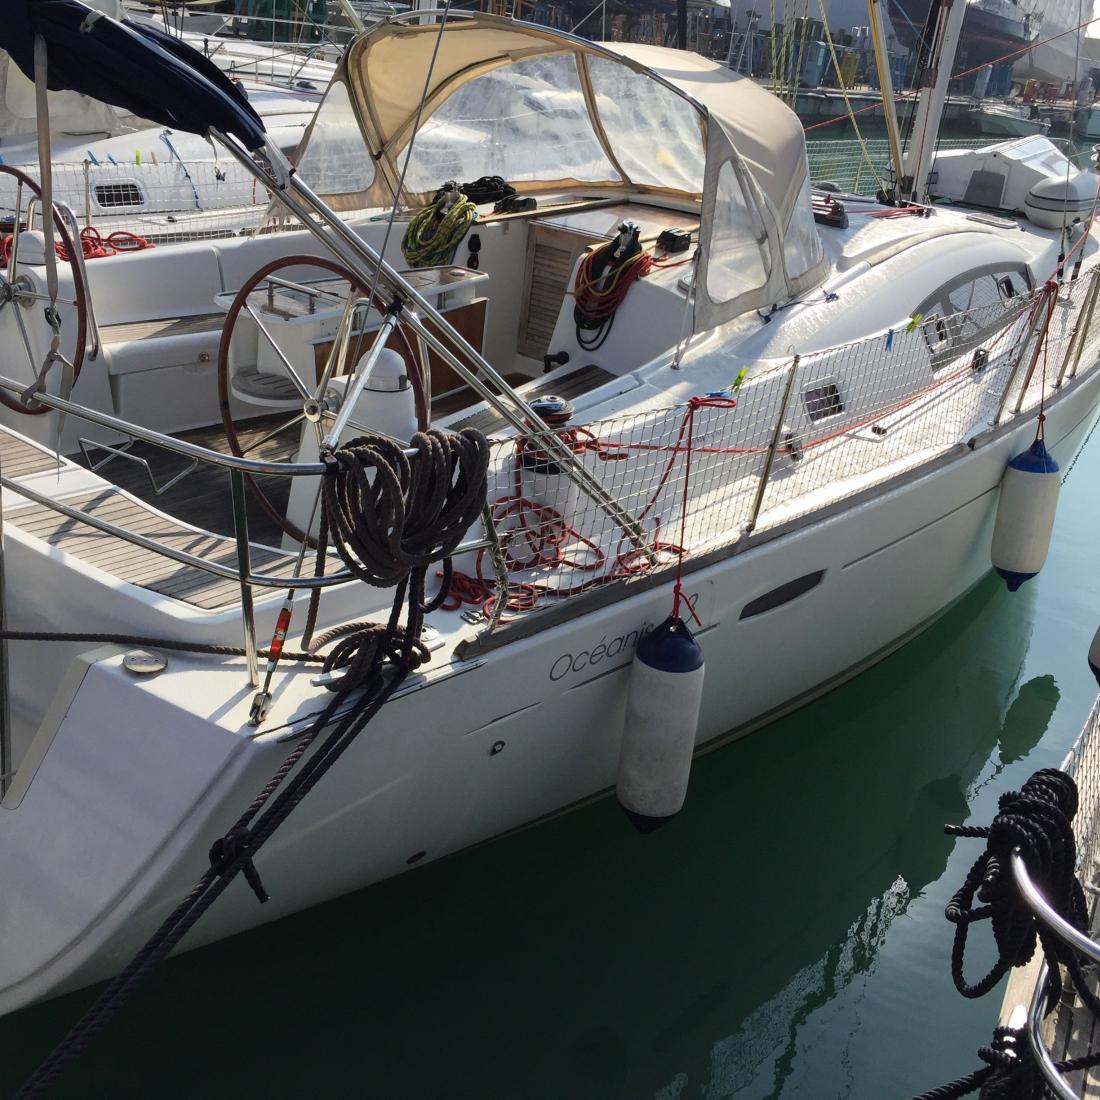 oceanis vela charter barca sardegna costa smeralda italia mare vacanza skipper 